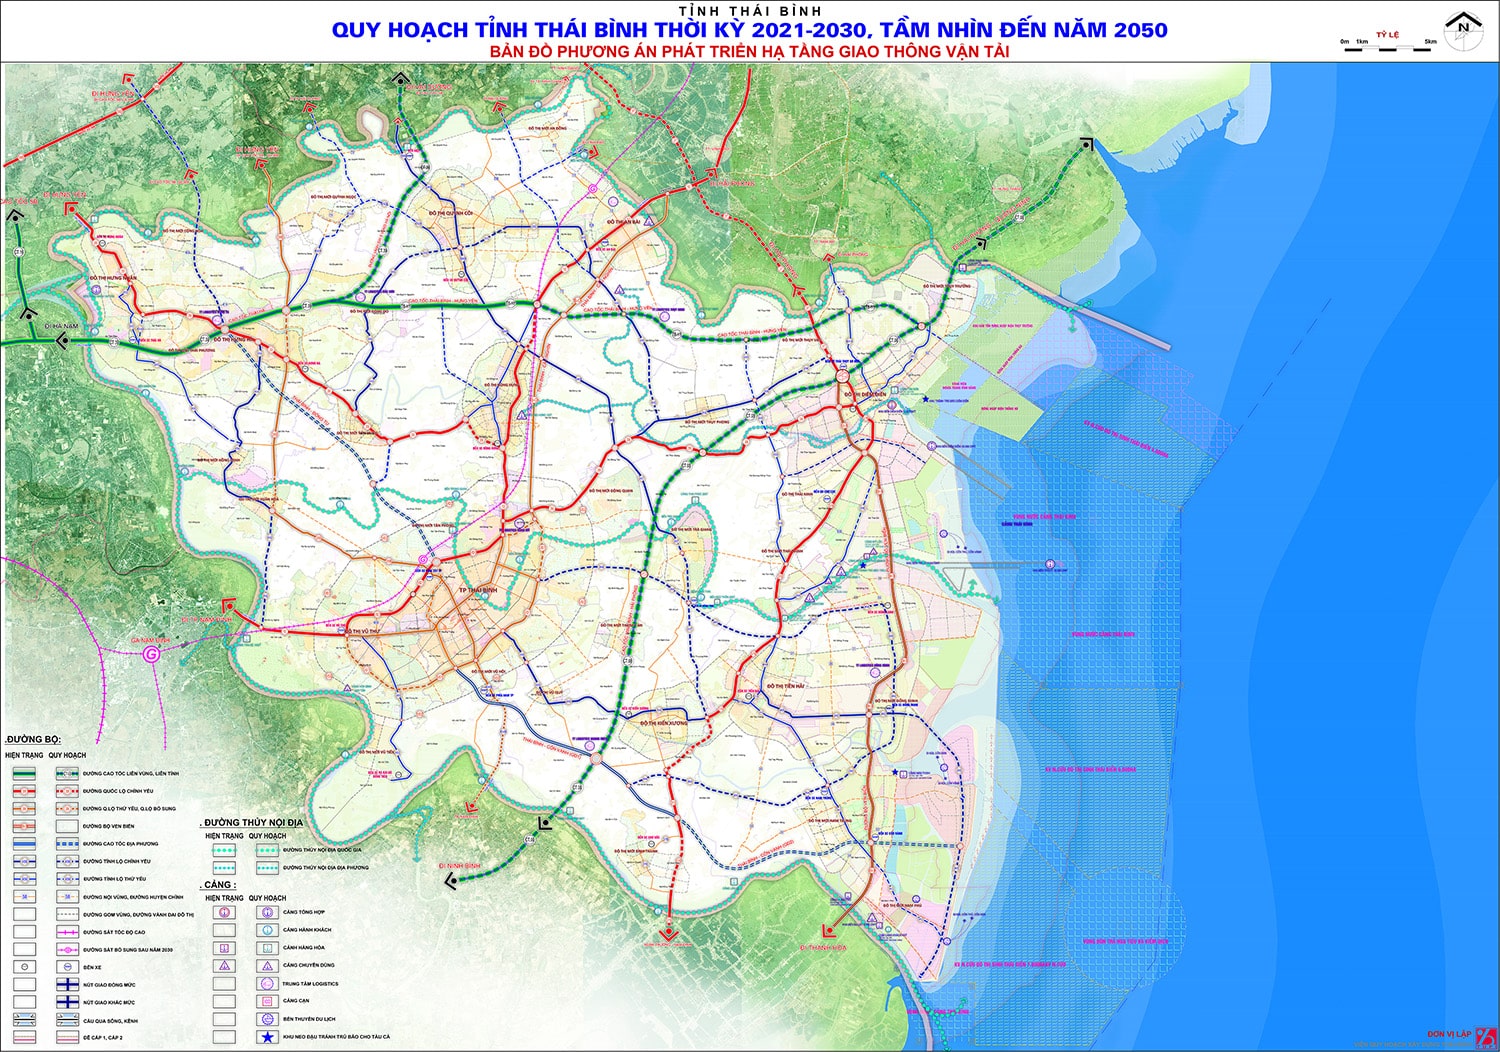 Bản đồ quy hoạch phát triển giao thông tỉnh Thái Bình đến năm 2030, tầm nhìn năm 2050